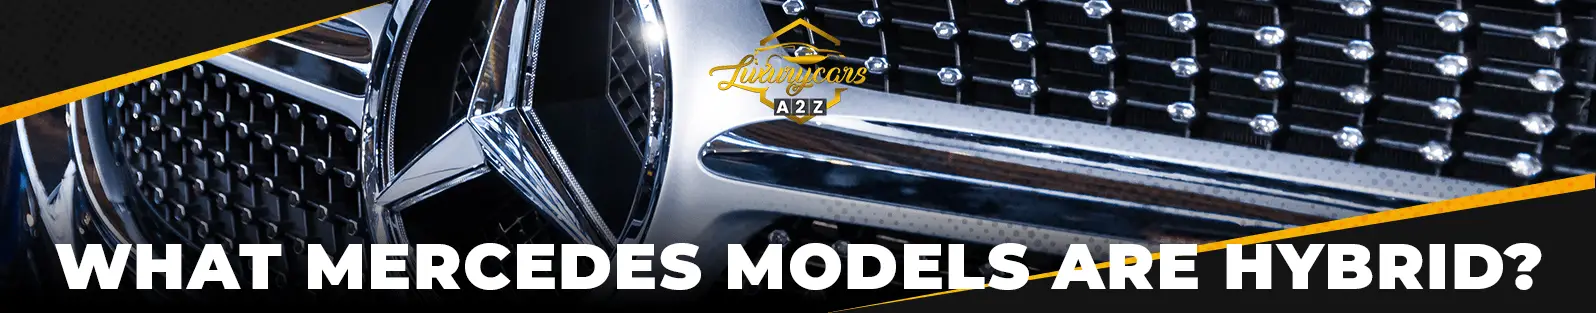 Quels modèles Mercedes sont hybrides ?